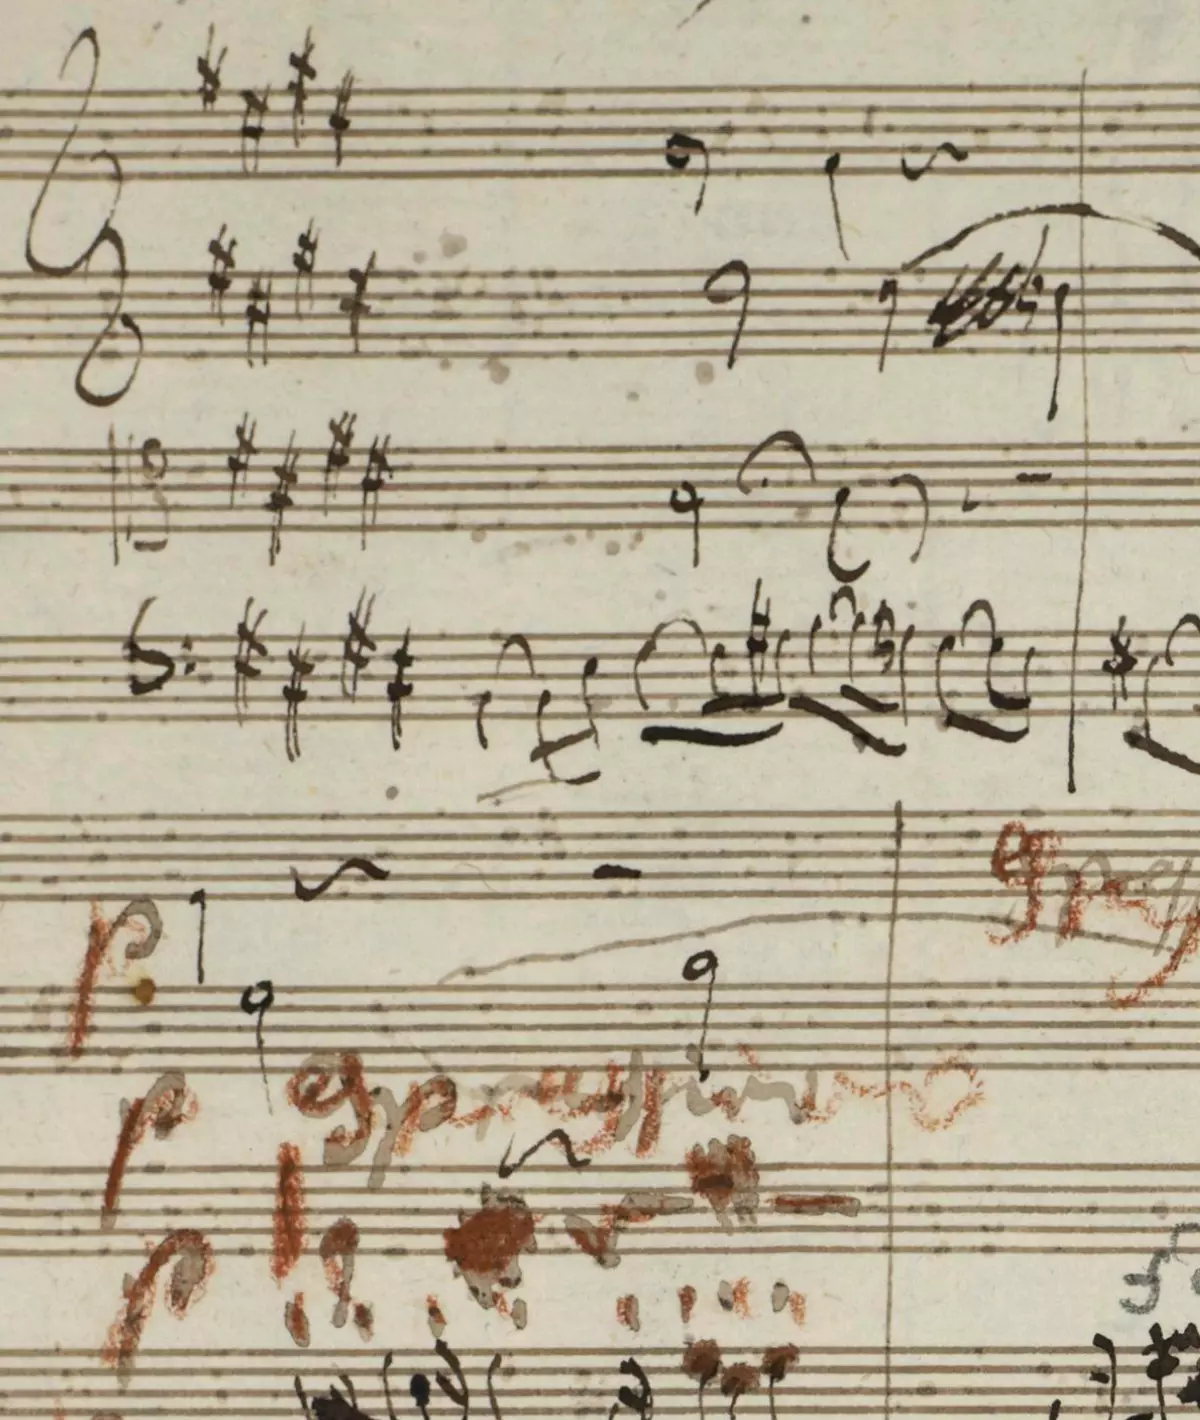 Autograph score of String Quartet Op.59 No.2, Molto Adagio (folio 15, recto).